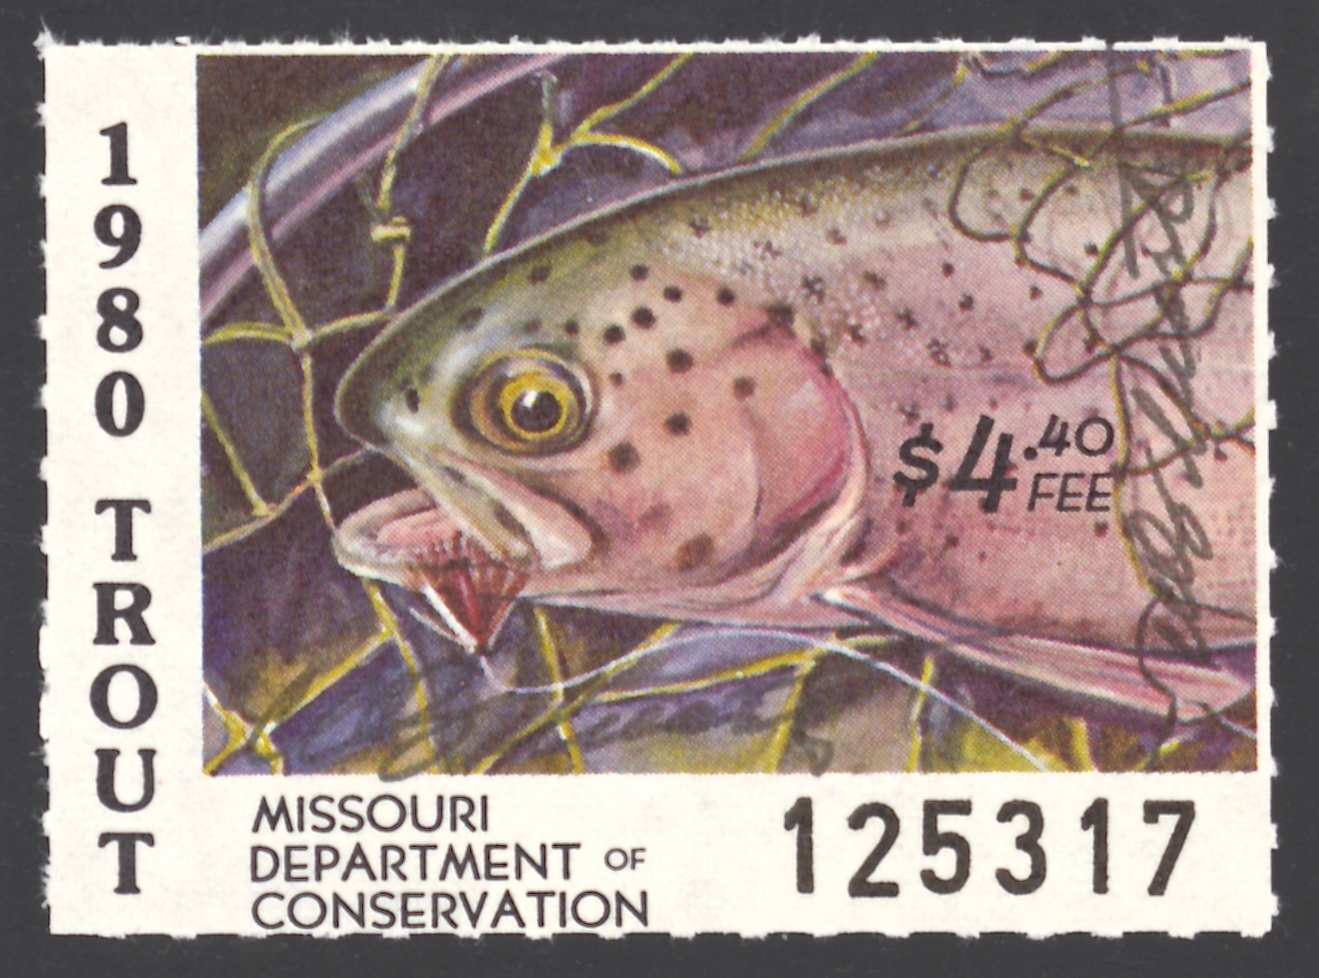 1980 Missouri Missouri Trout Stamp signed by Charles Schwartz